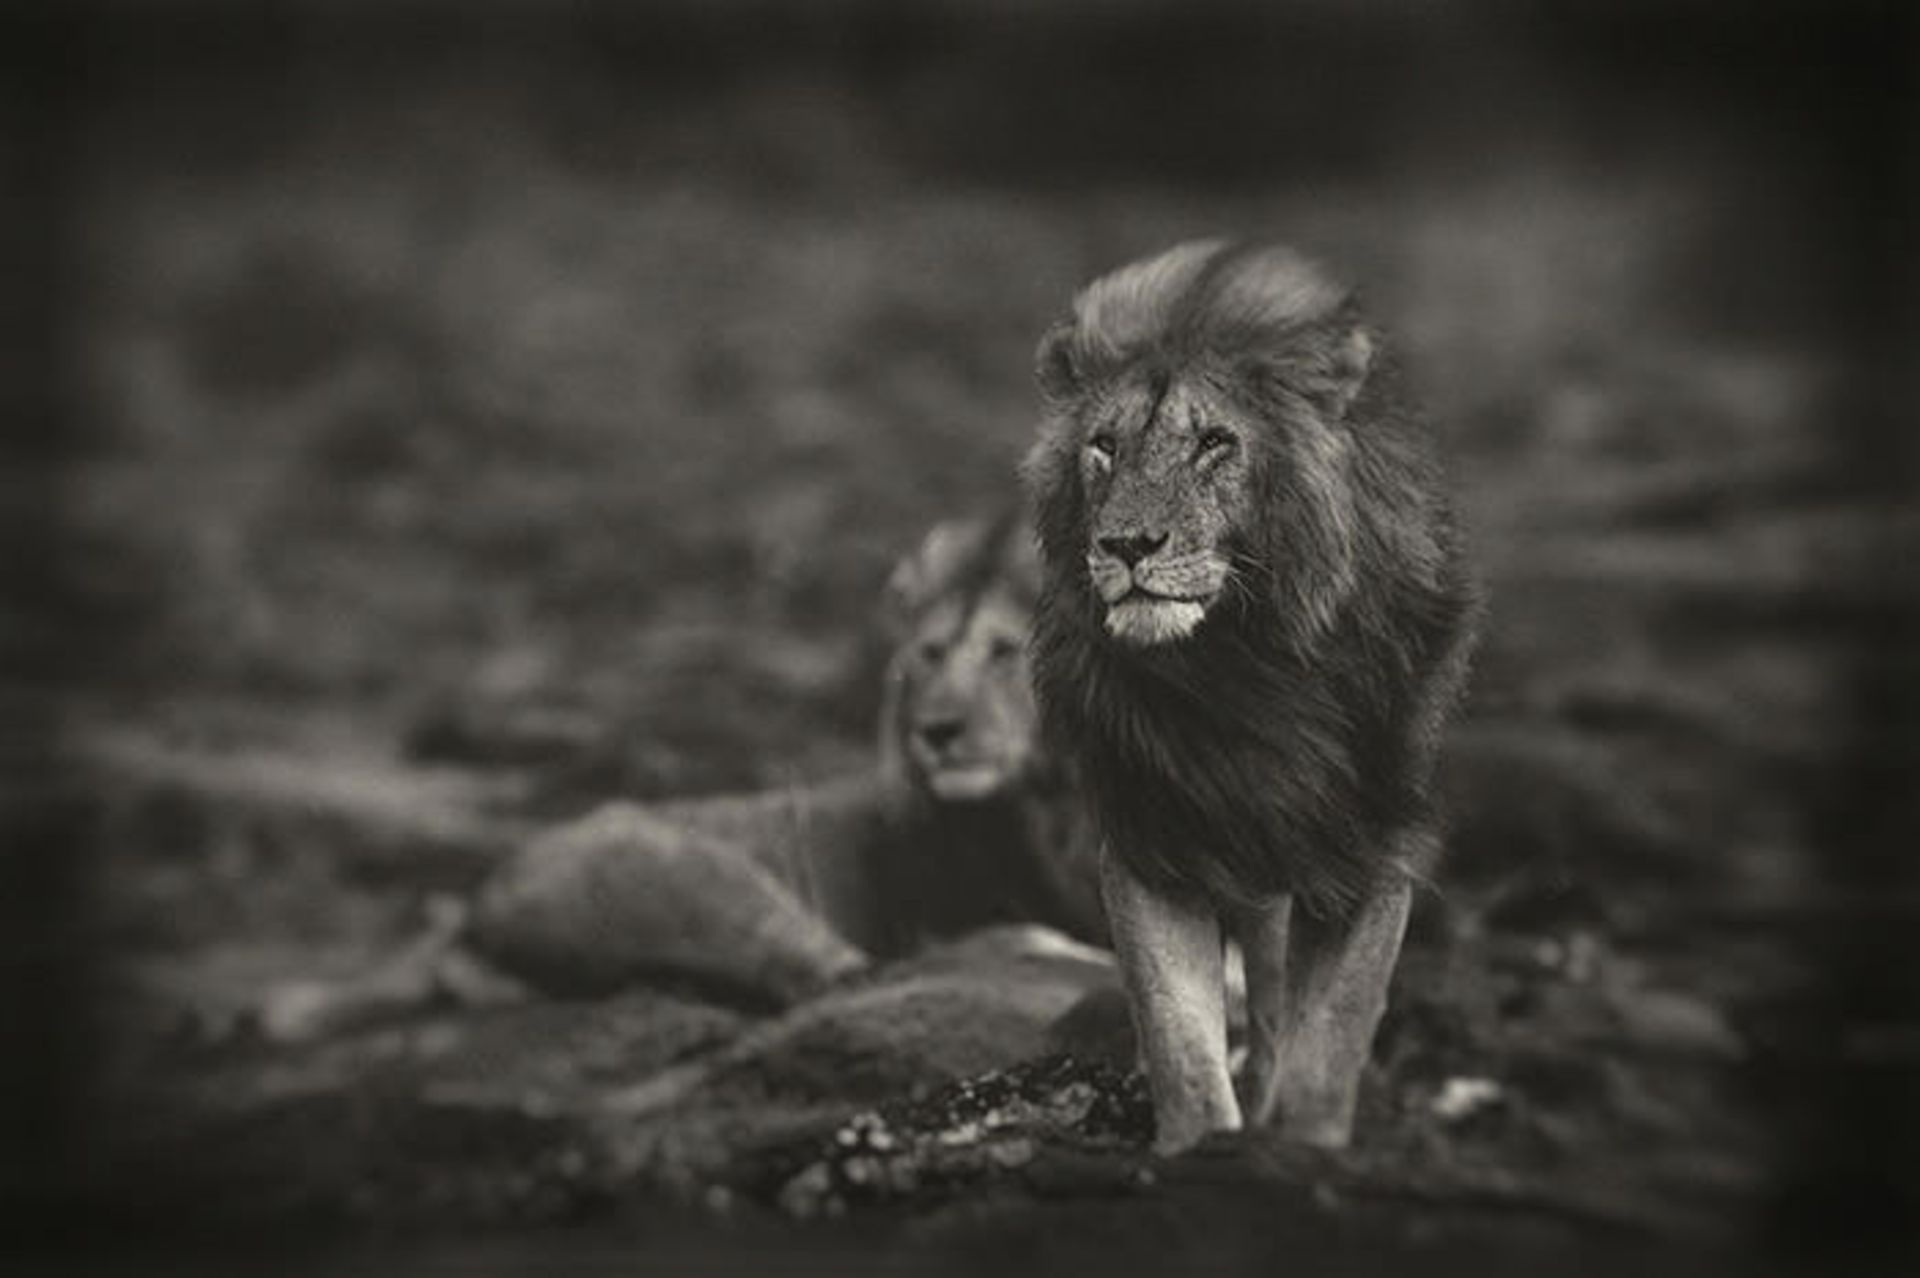 عکاسی سیاه و سفید از سلطان جنگل